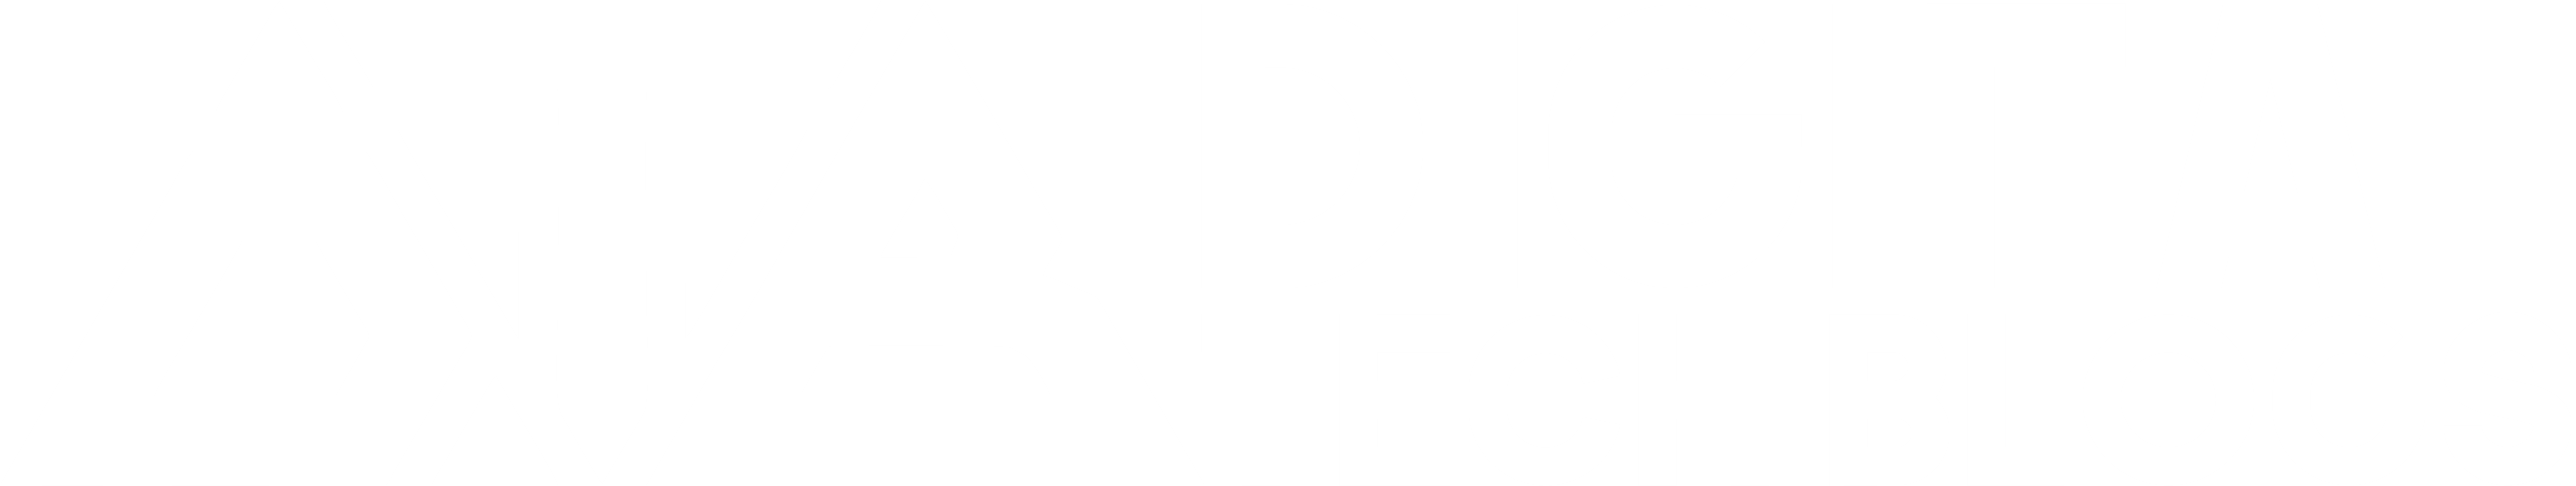 Digital Tech Blogs